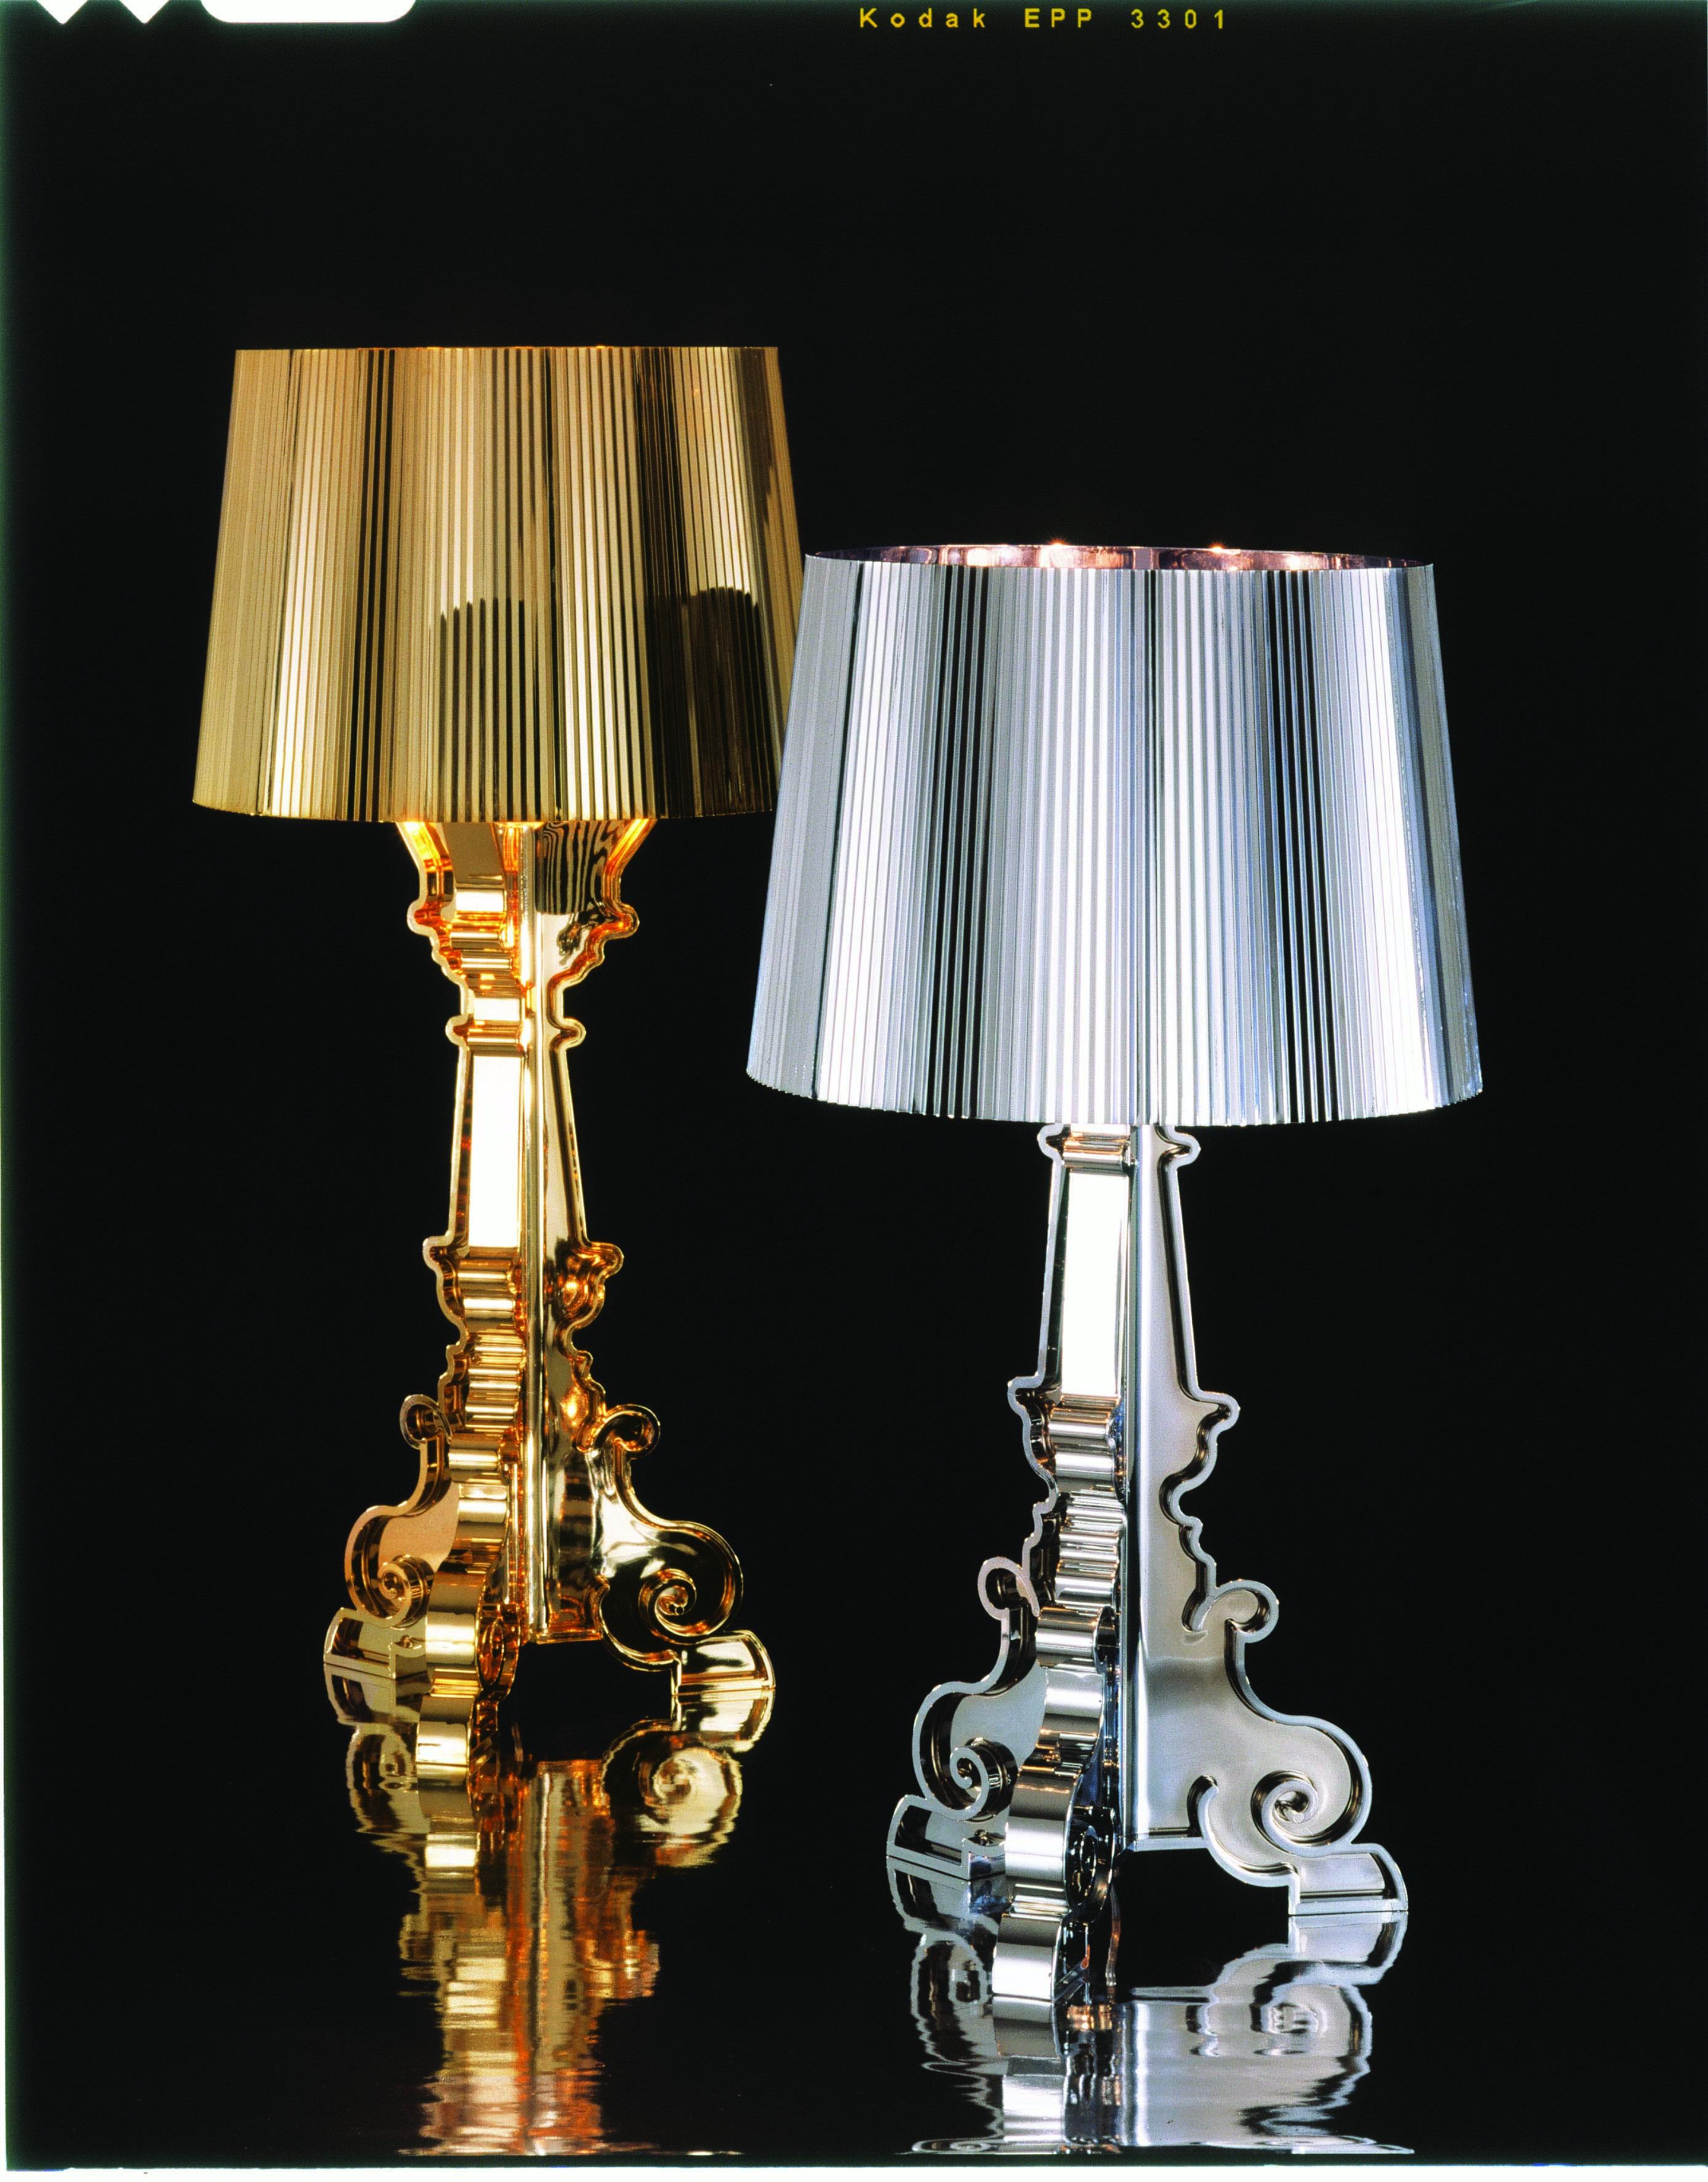 Lampe au style inimitable, Bourgie est l'une des meilleures ventes de Kartell, combinant habilement le style classique, la richesse et la tradition avec l'innovation et l'ironie. La base de style baroque est composée de trois couches décorées